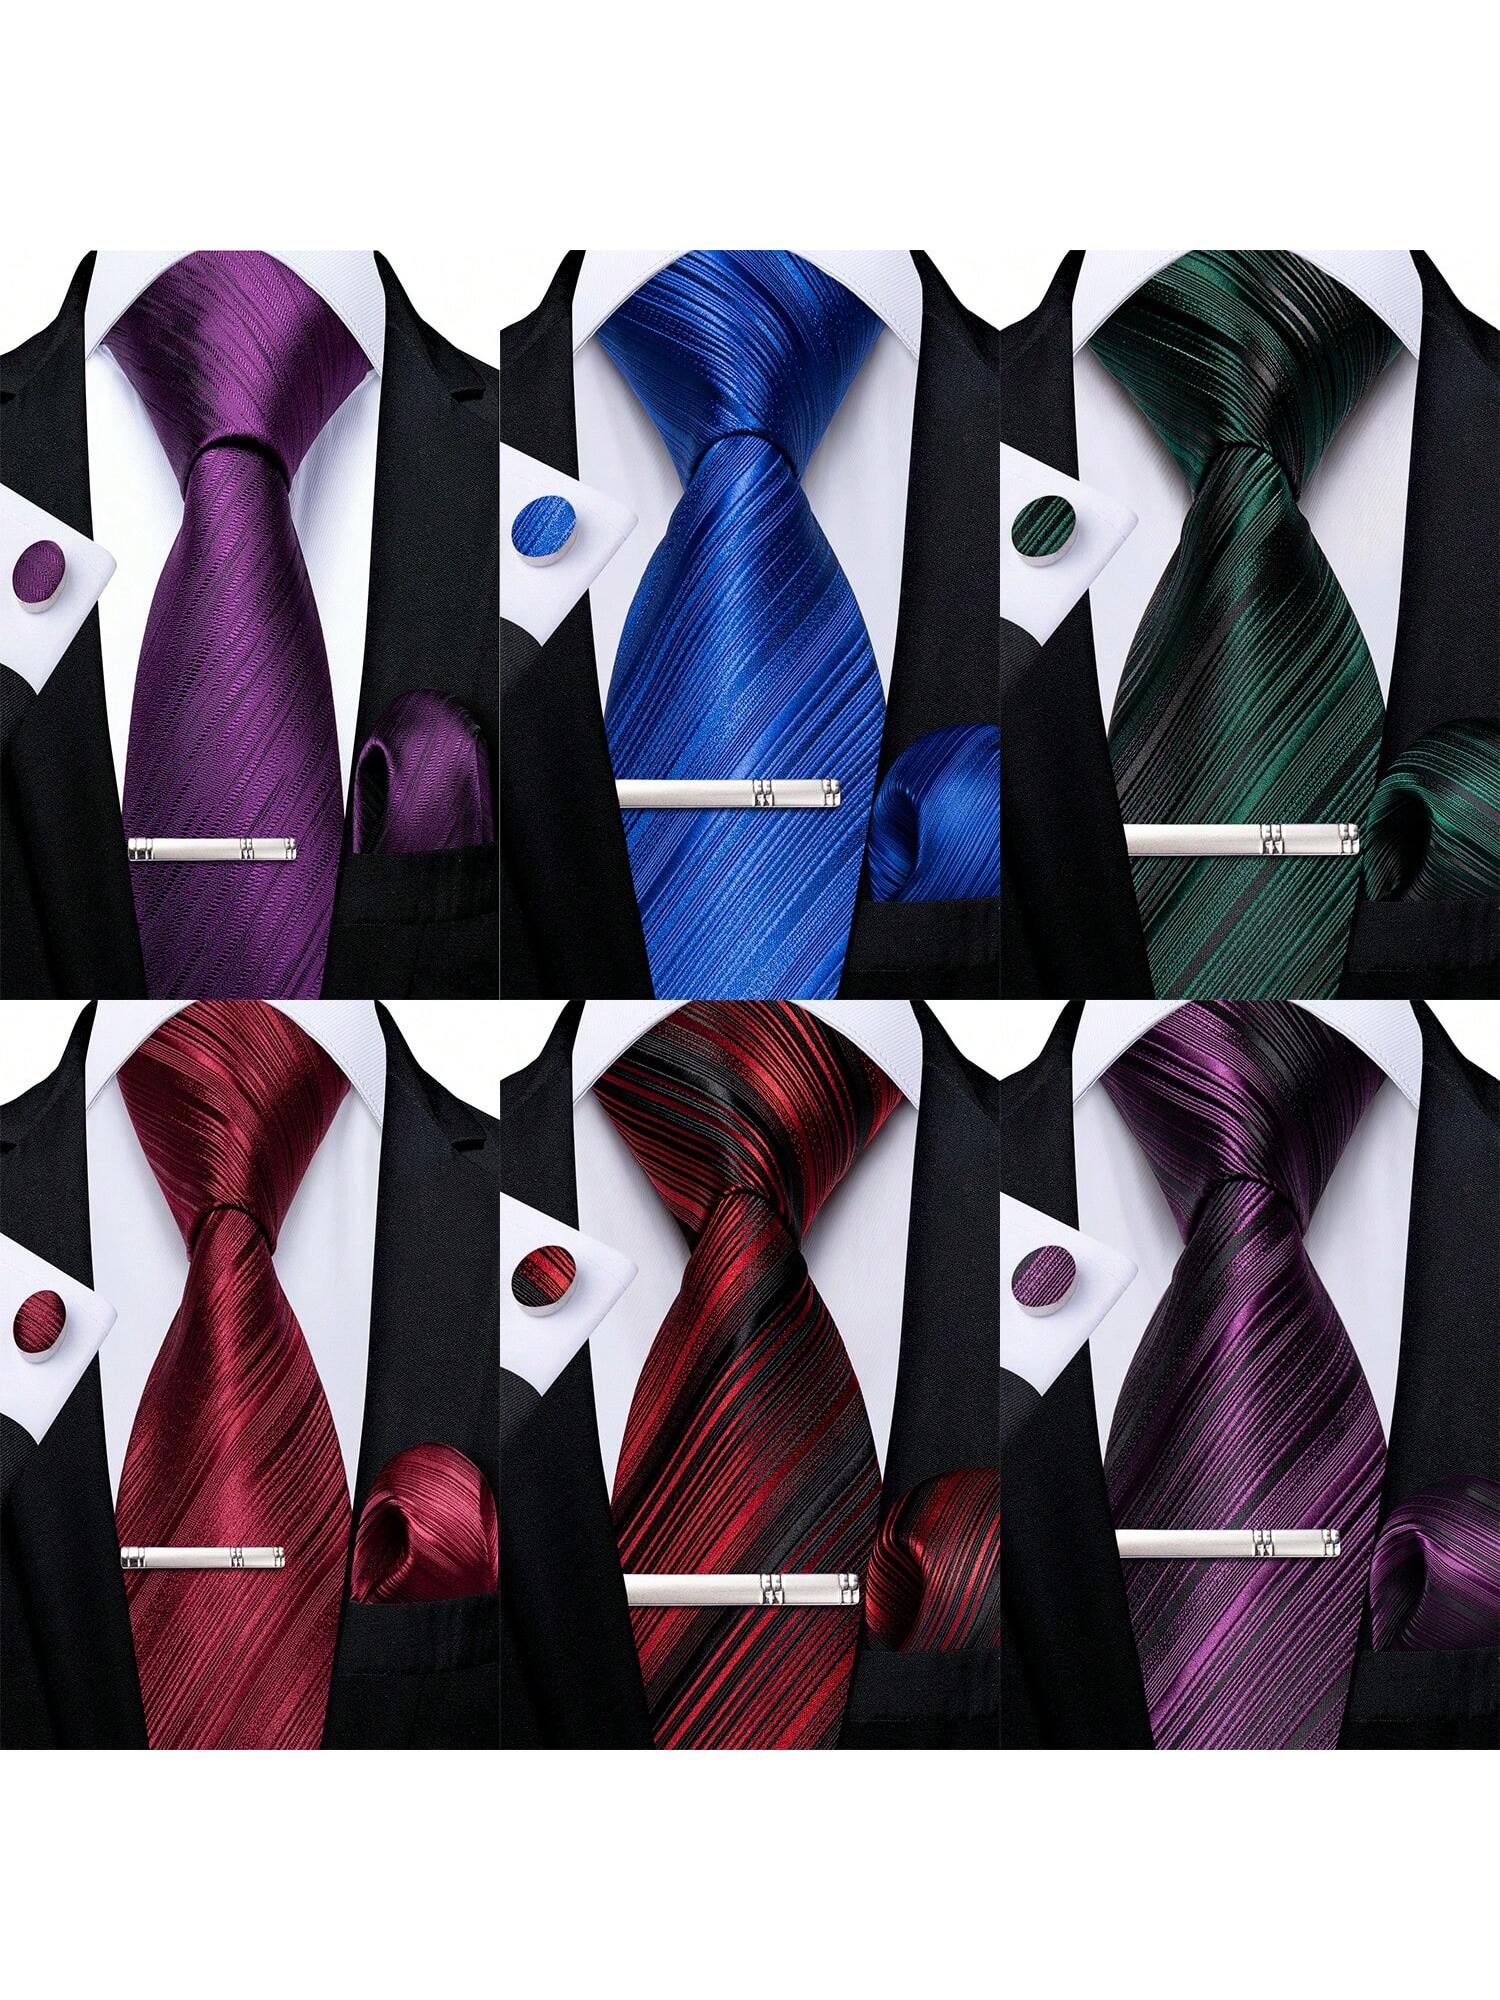 DiBanGu мужские галстуки шелковые полосатые свадебные галстуки карманные квадратные запонки зажим набор свадебный 4 шт., многоцветный новый галстук для мужчин тонкий хлопковый галстук для свадьбы повседневные мужские галстуки классические костюмы галстуки с принтом